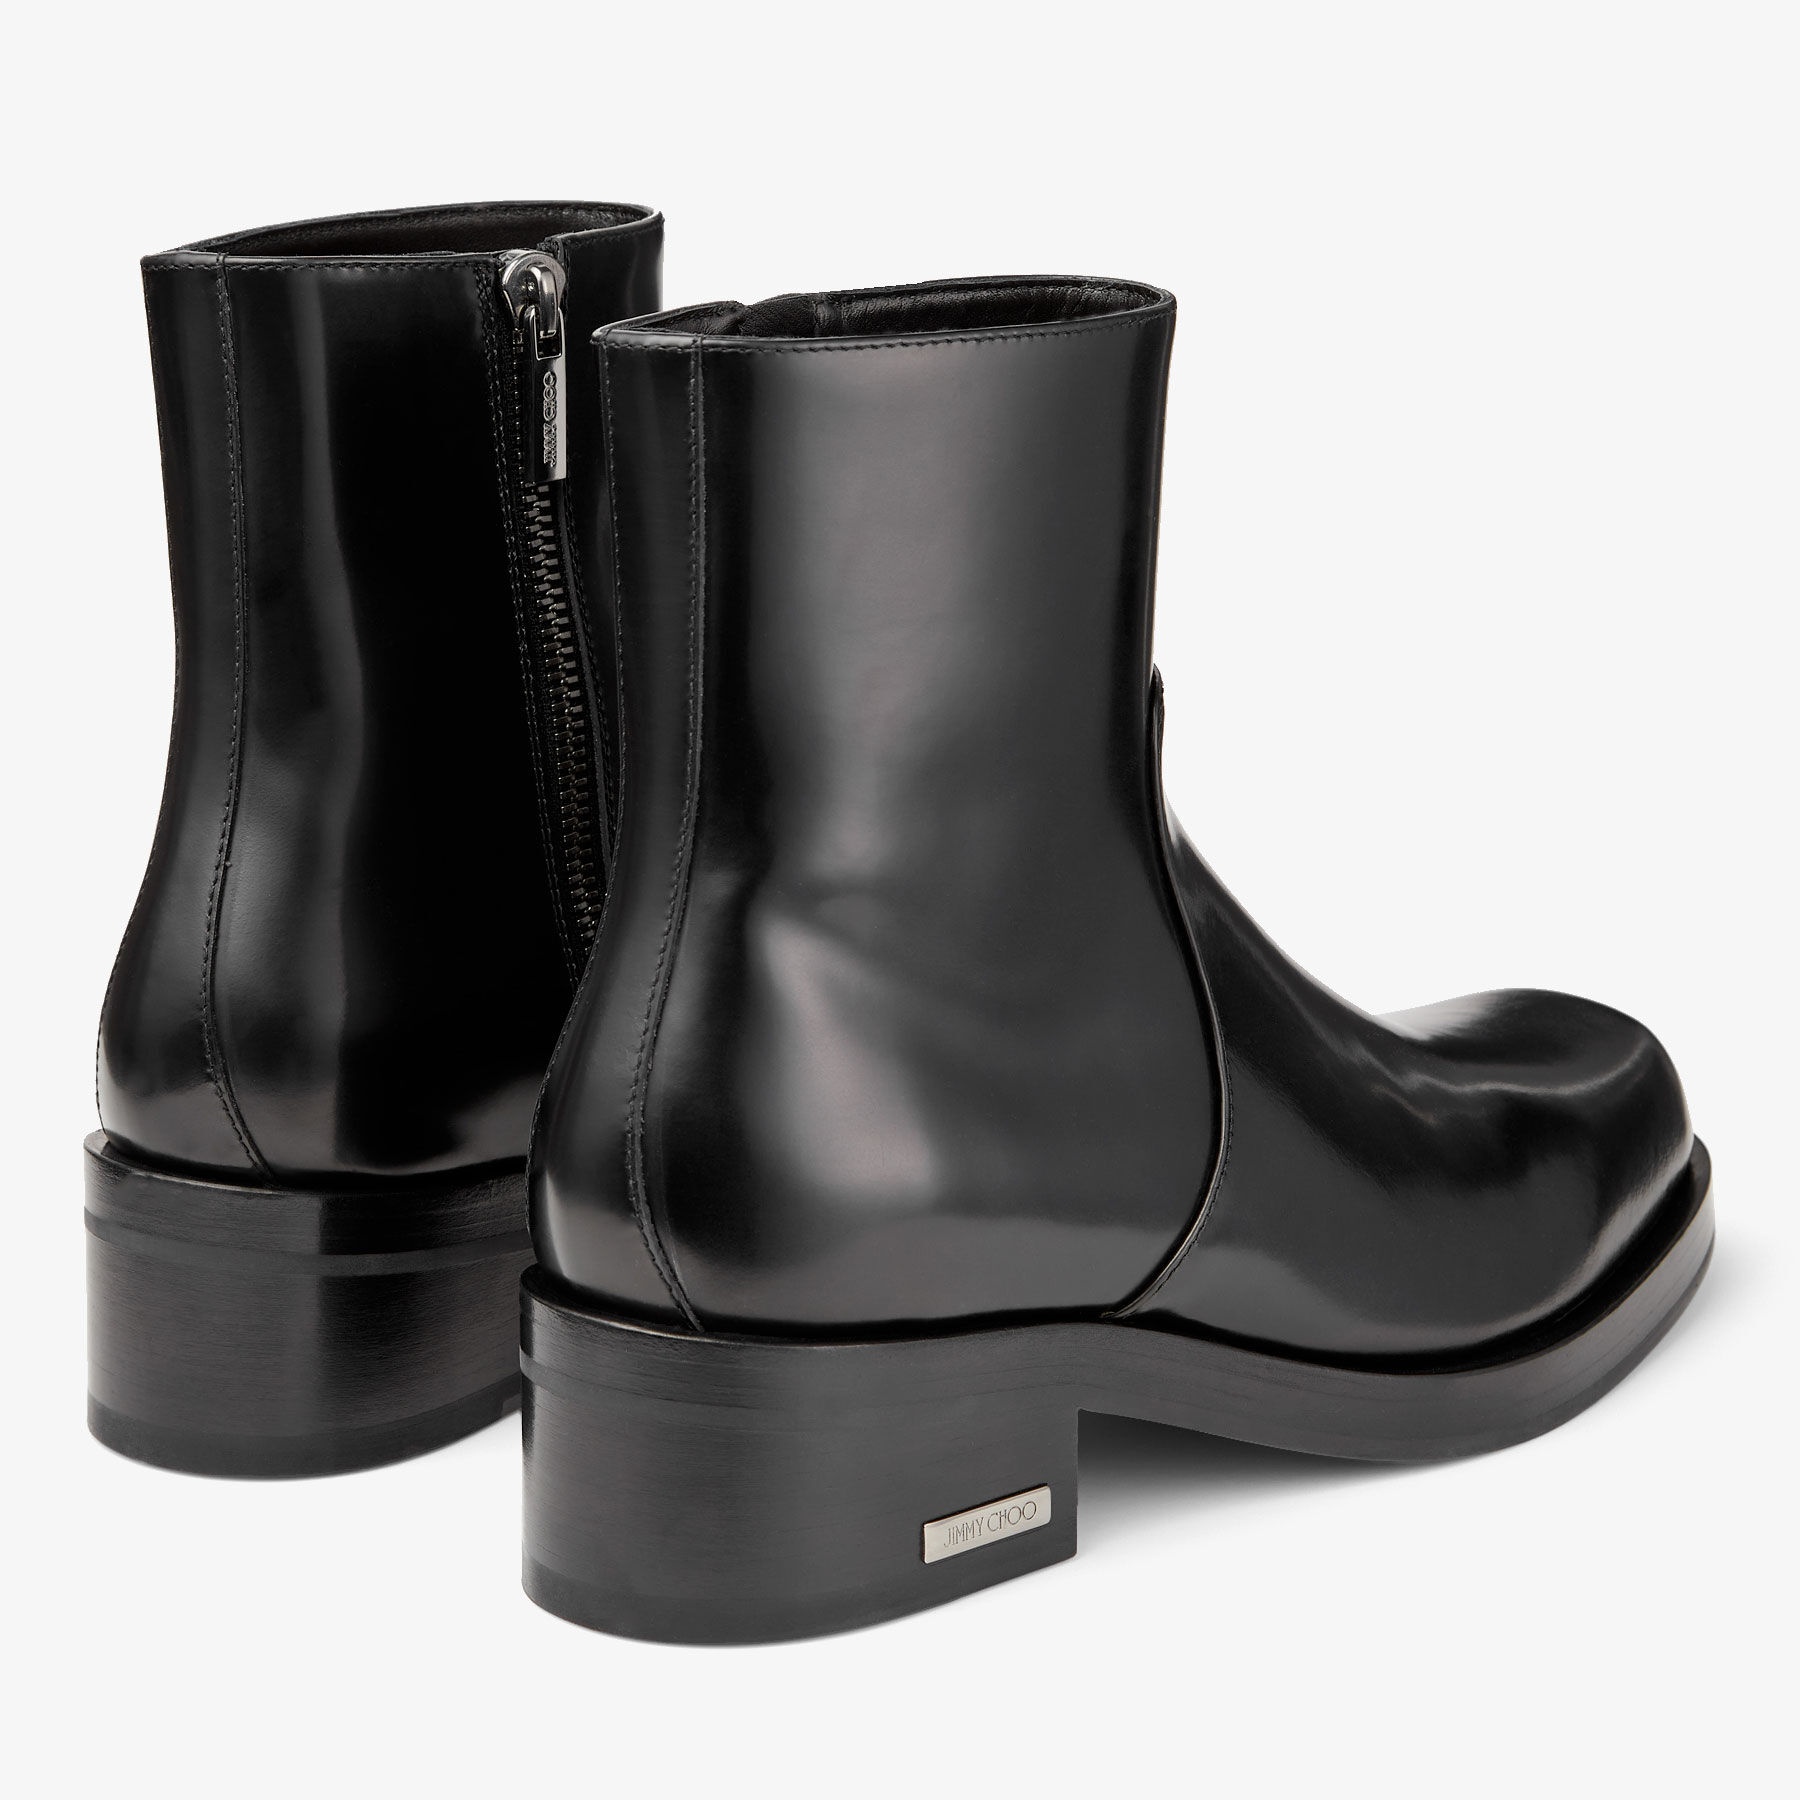 Elias Zip Boot
Black Calf Leather Zip Boots - 6